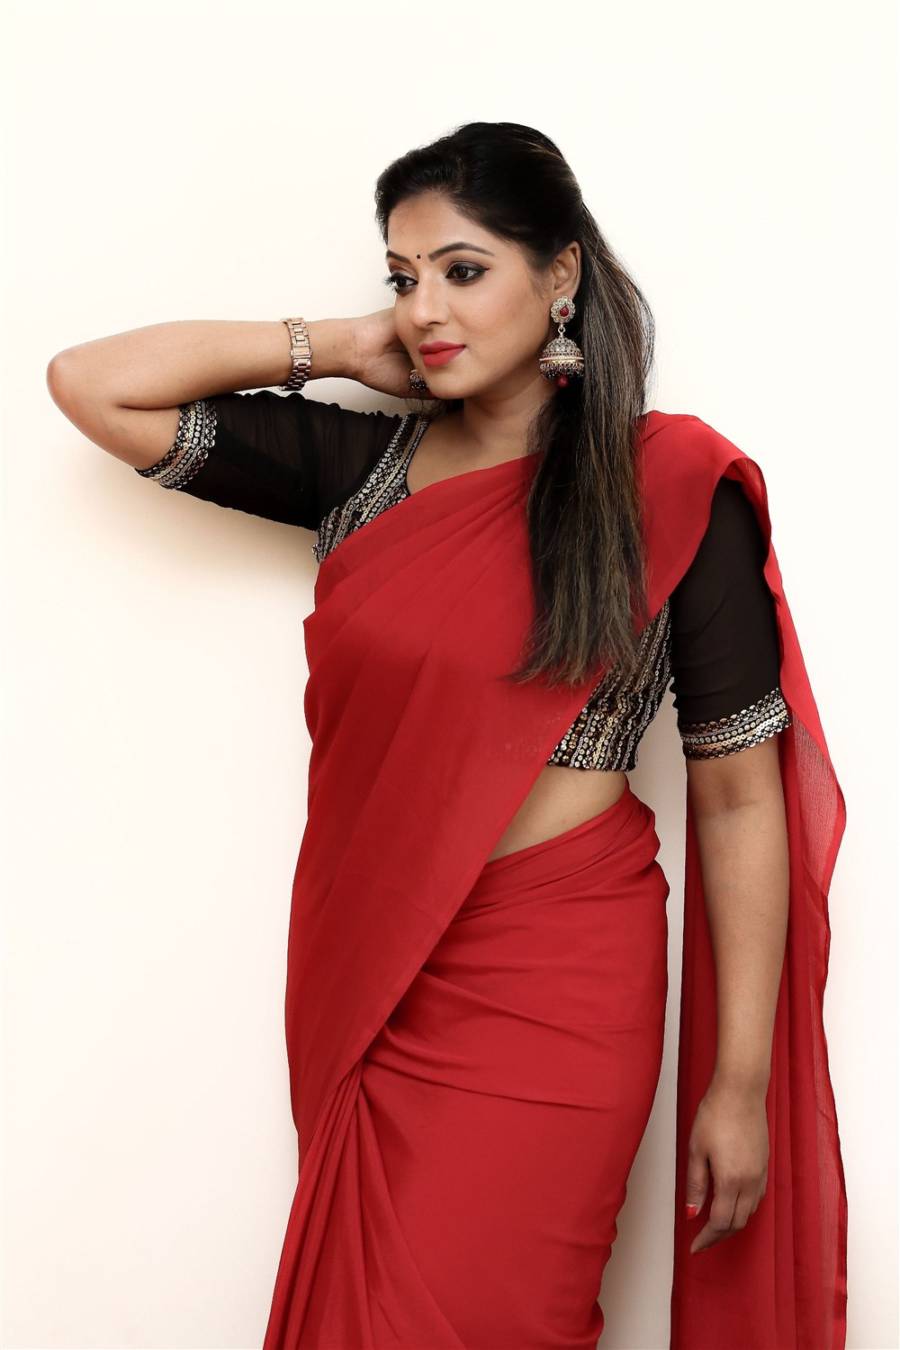 Beautiful Tamil Girl Reshma Pasupuleti Hot In Red Saree -6728